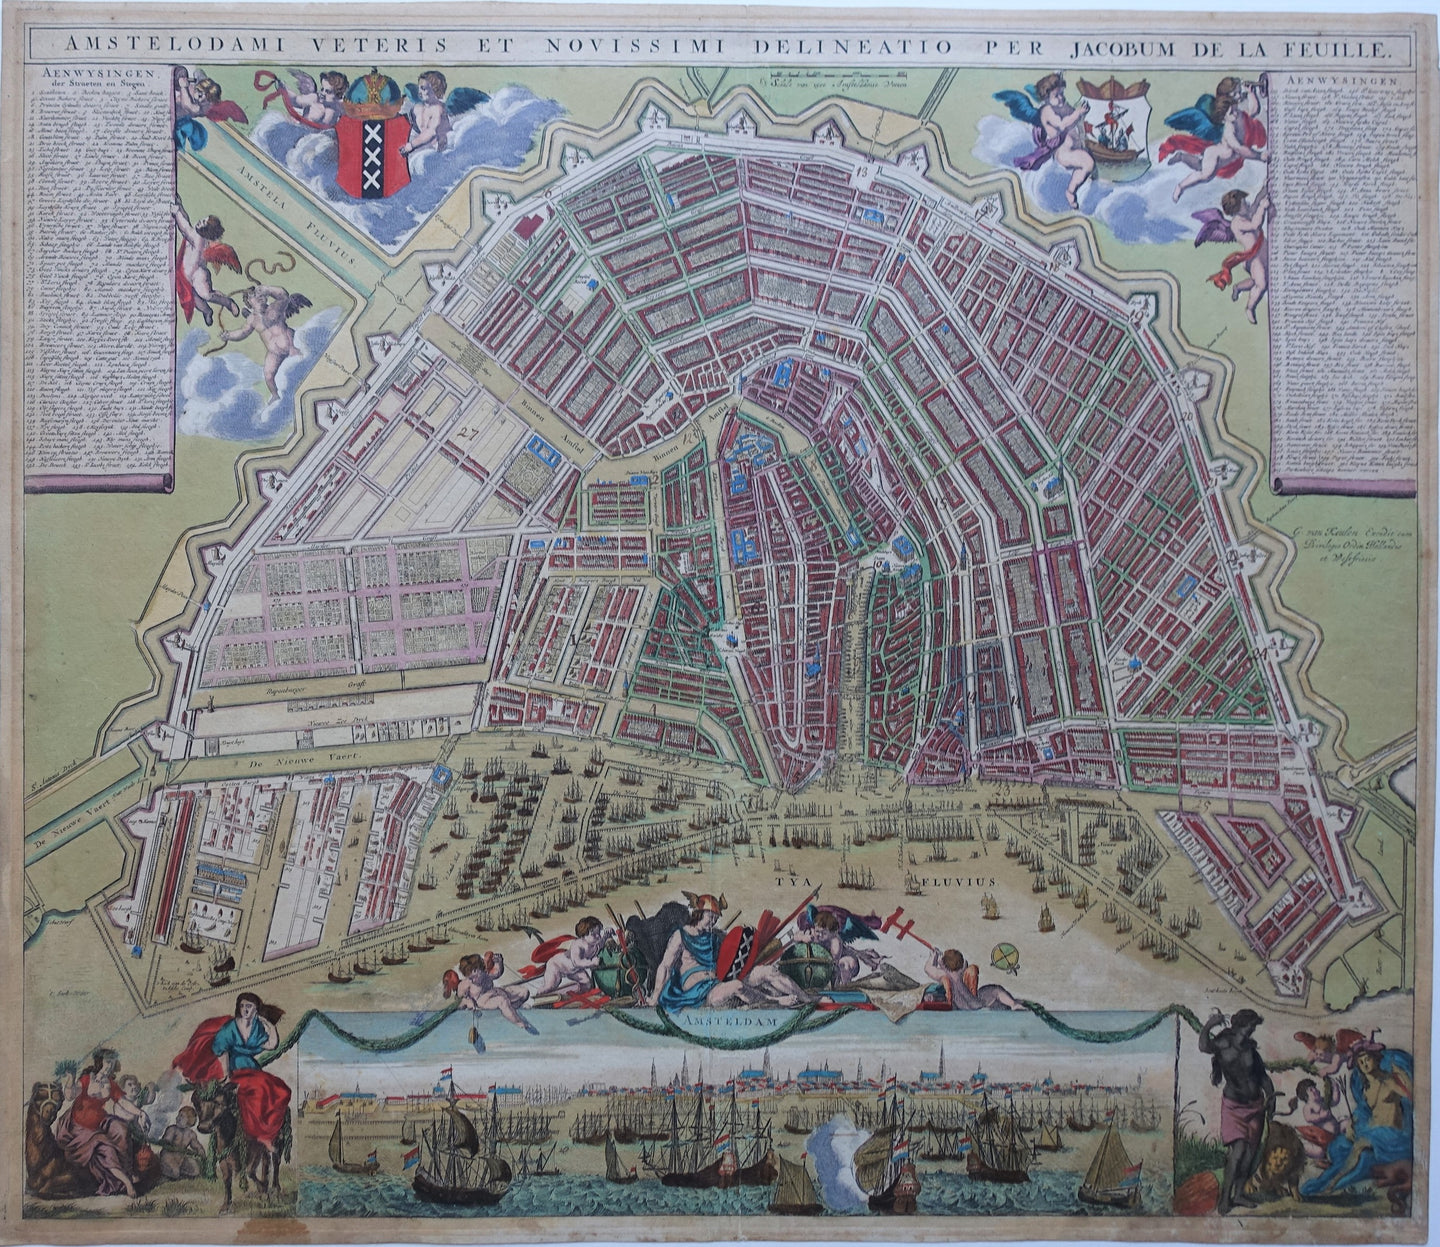 Amsterdam Stadsplattegrond in vogelvluchtperspectief met panorama - Gerard van Keulen - circa 1720